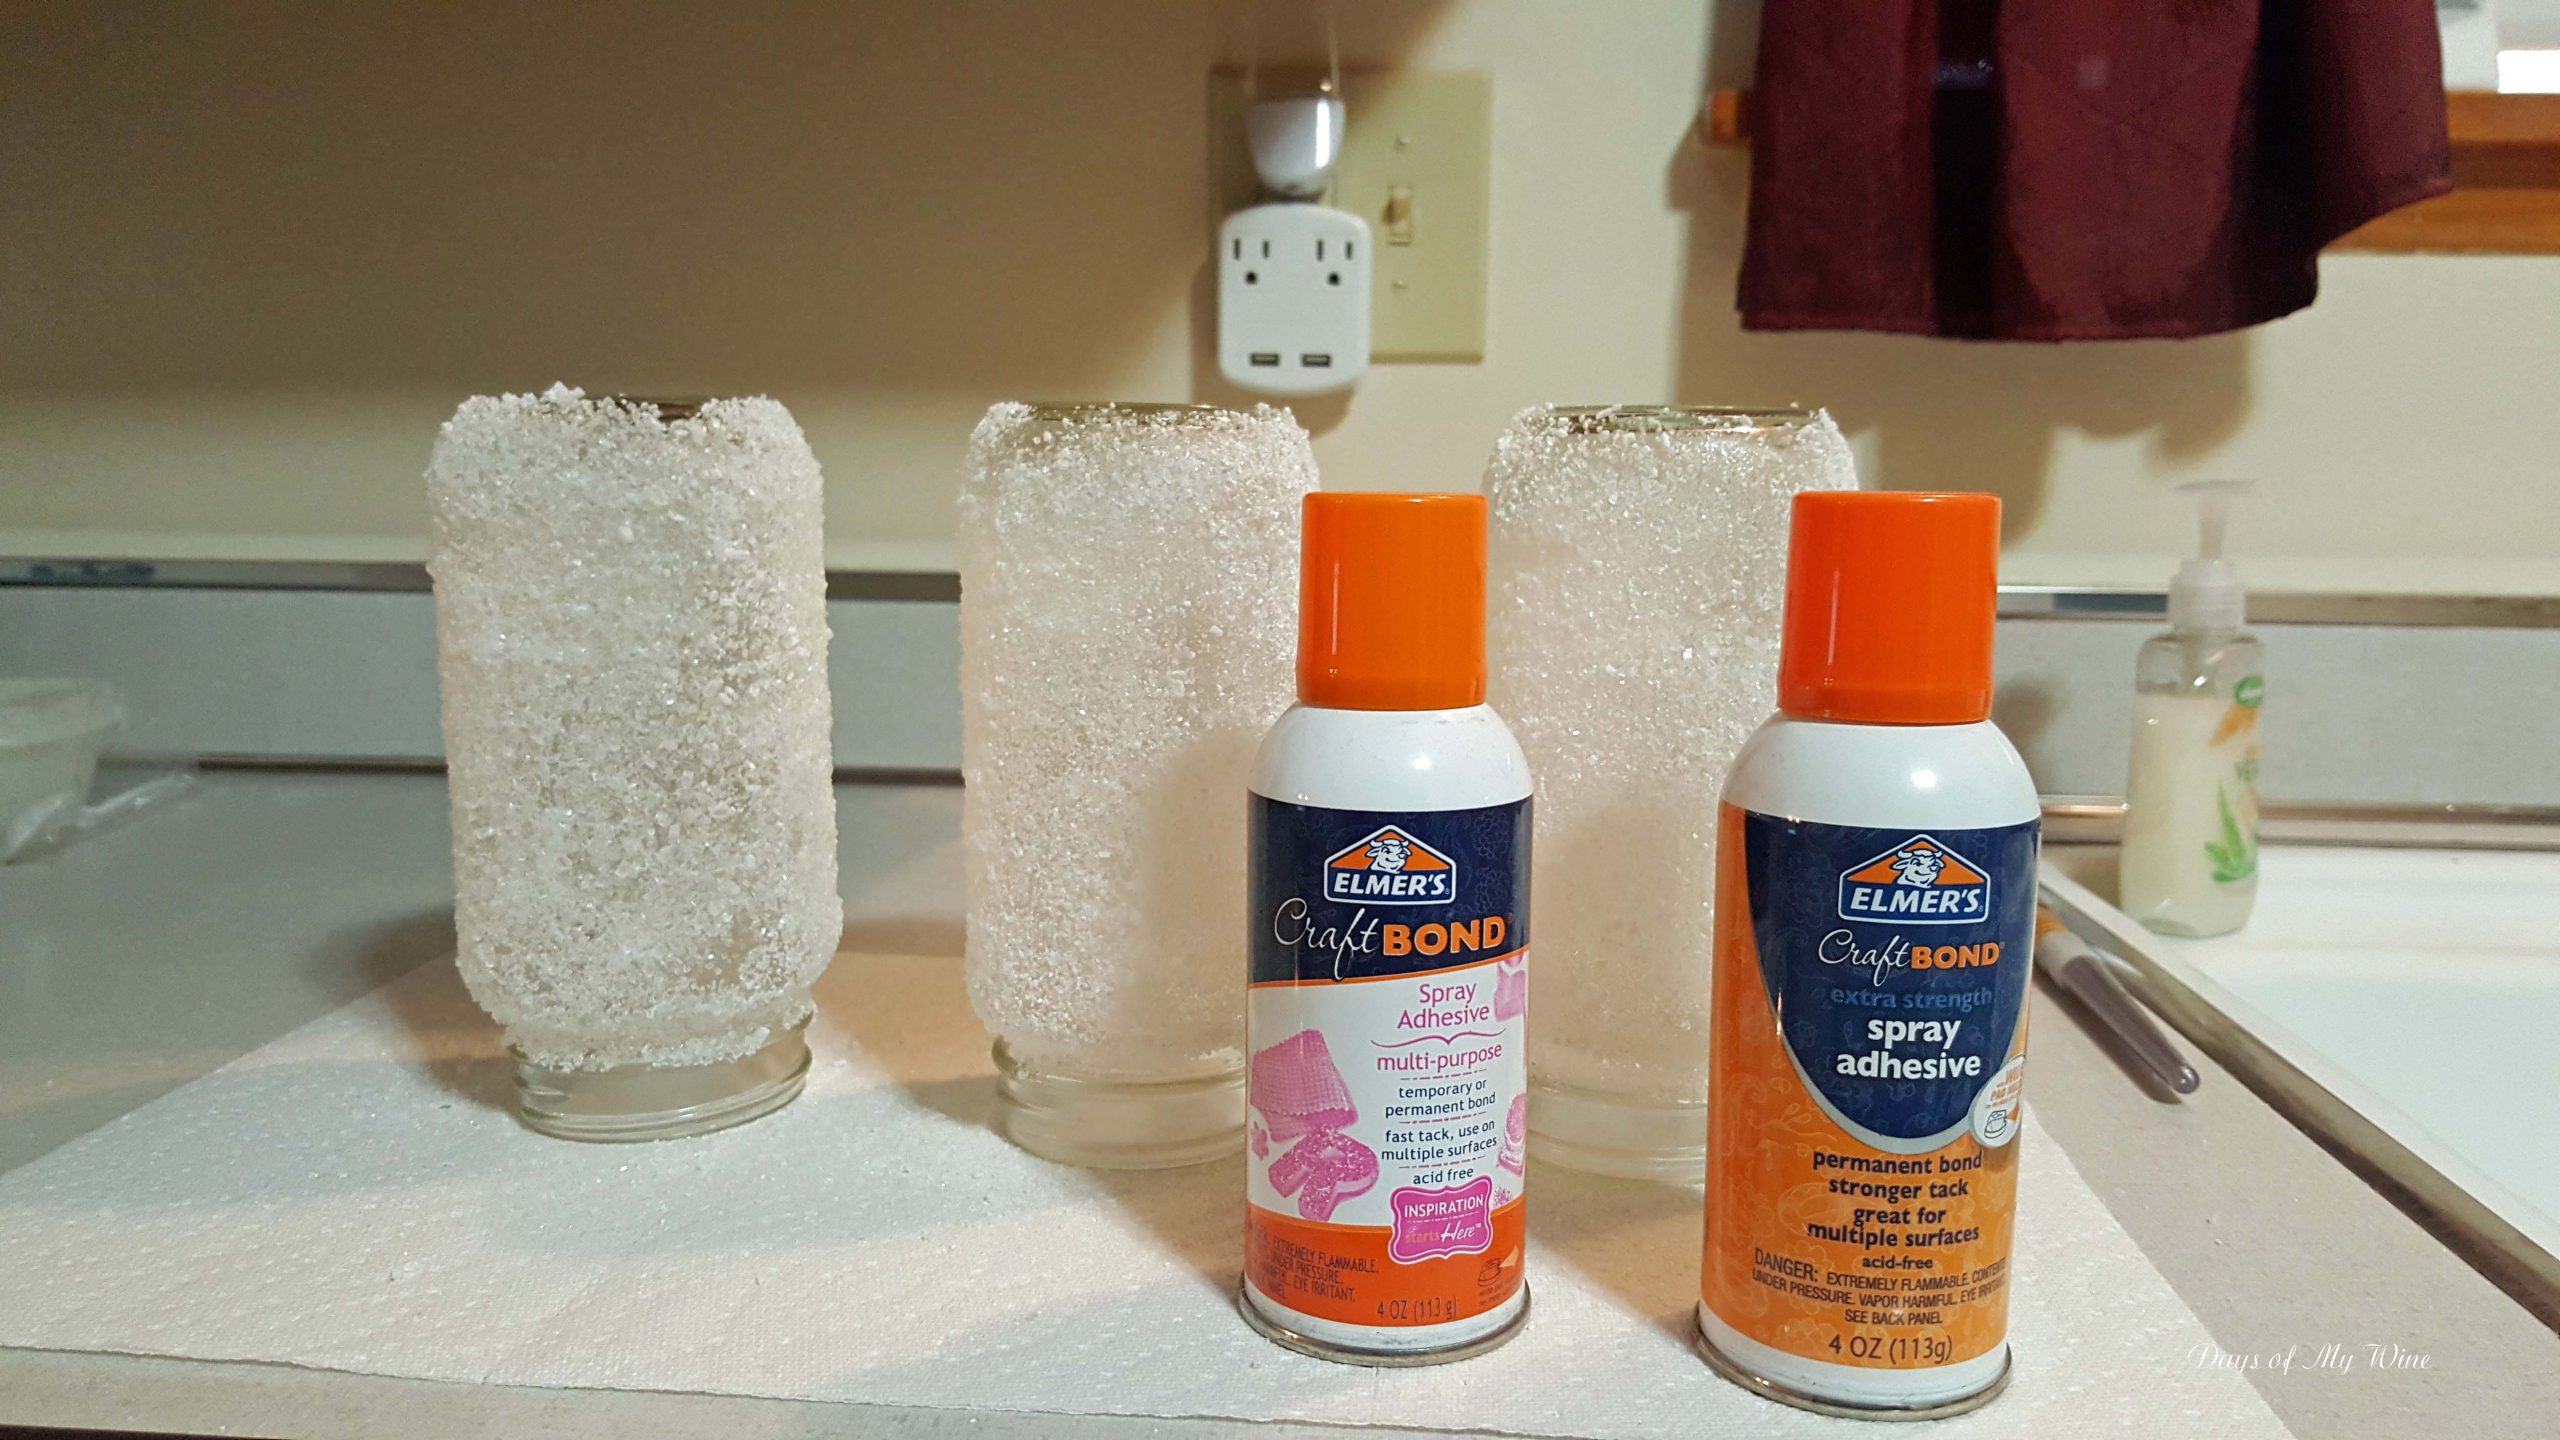  Elmer's Craftbond Multi-Purpose Spray Adhesive, 11 oz